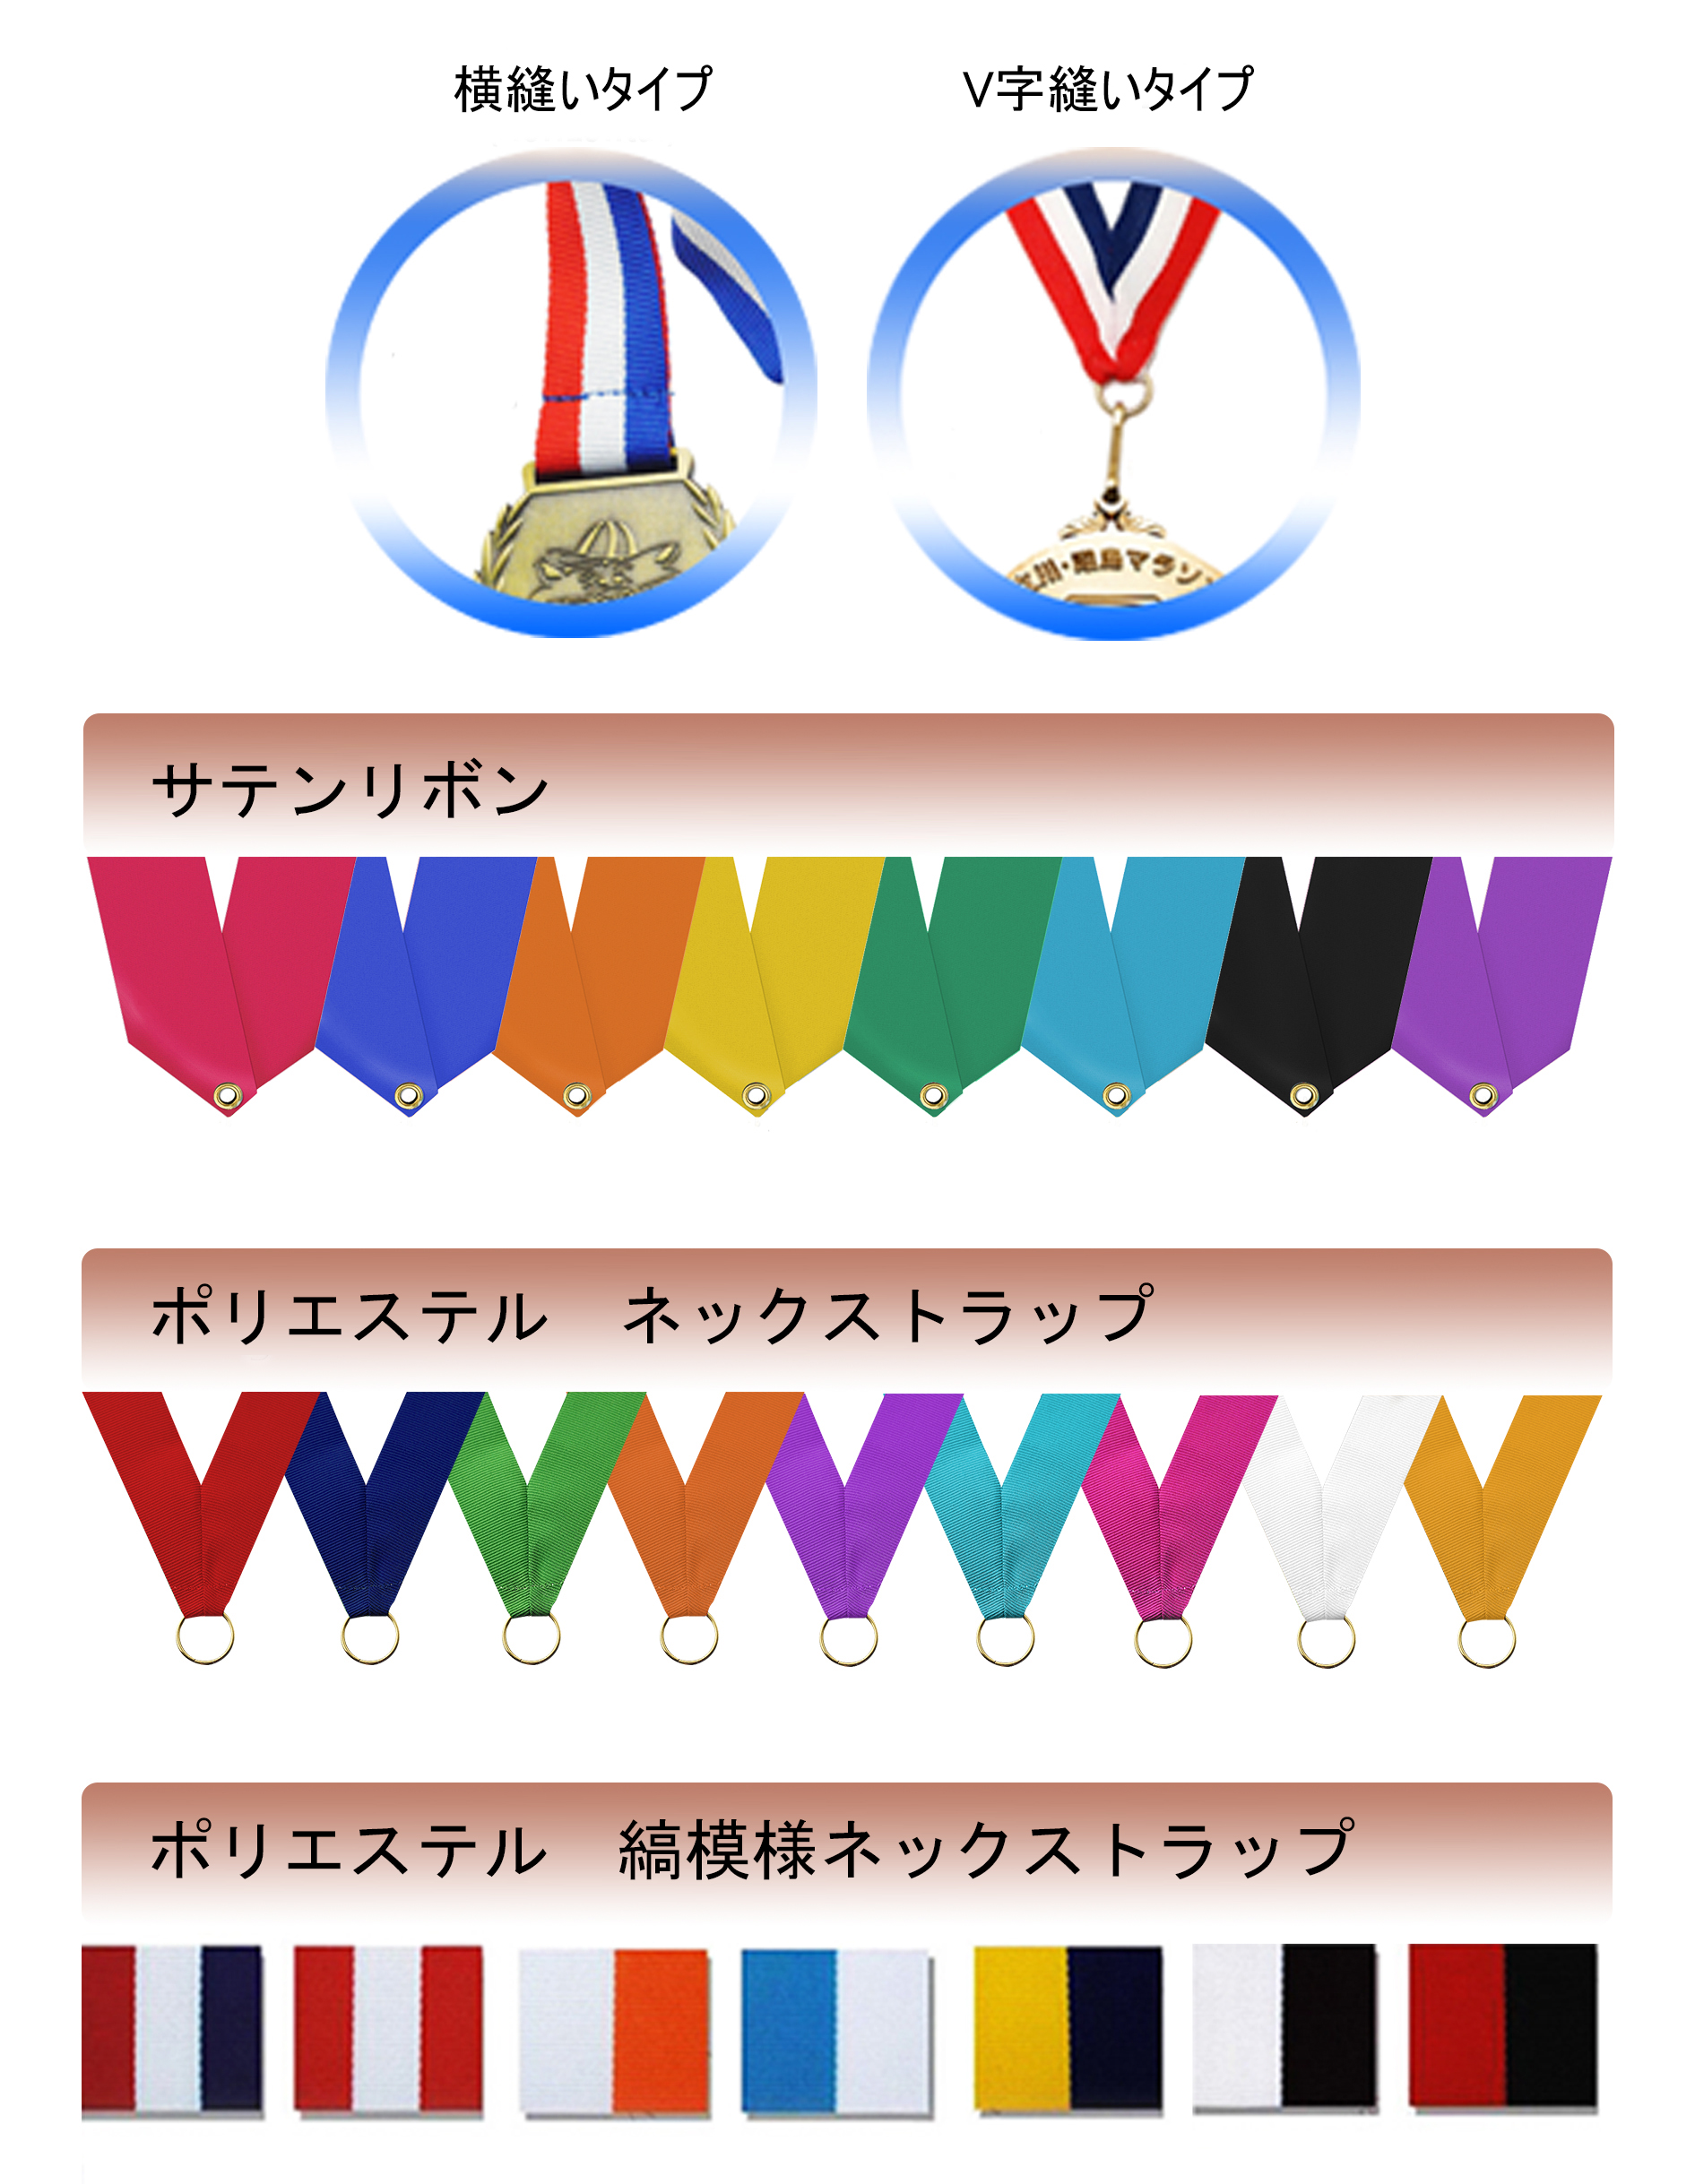 メダルの横縫いタイプとV字縫いタイプの違い